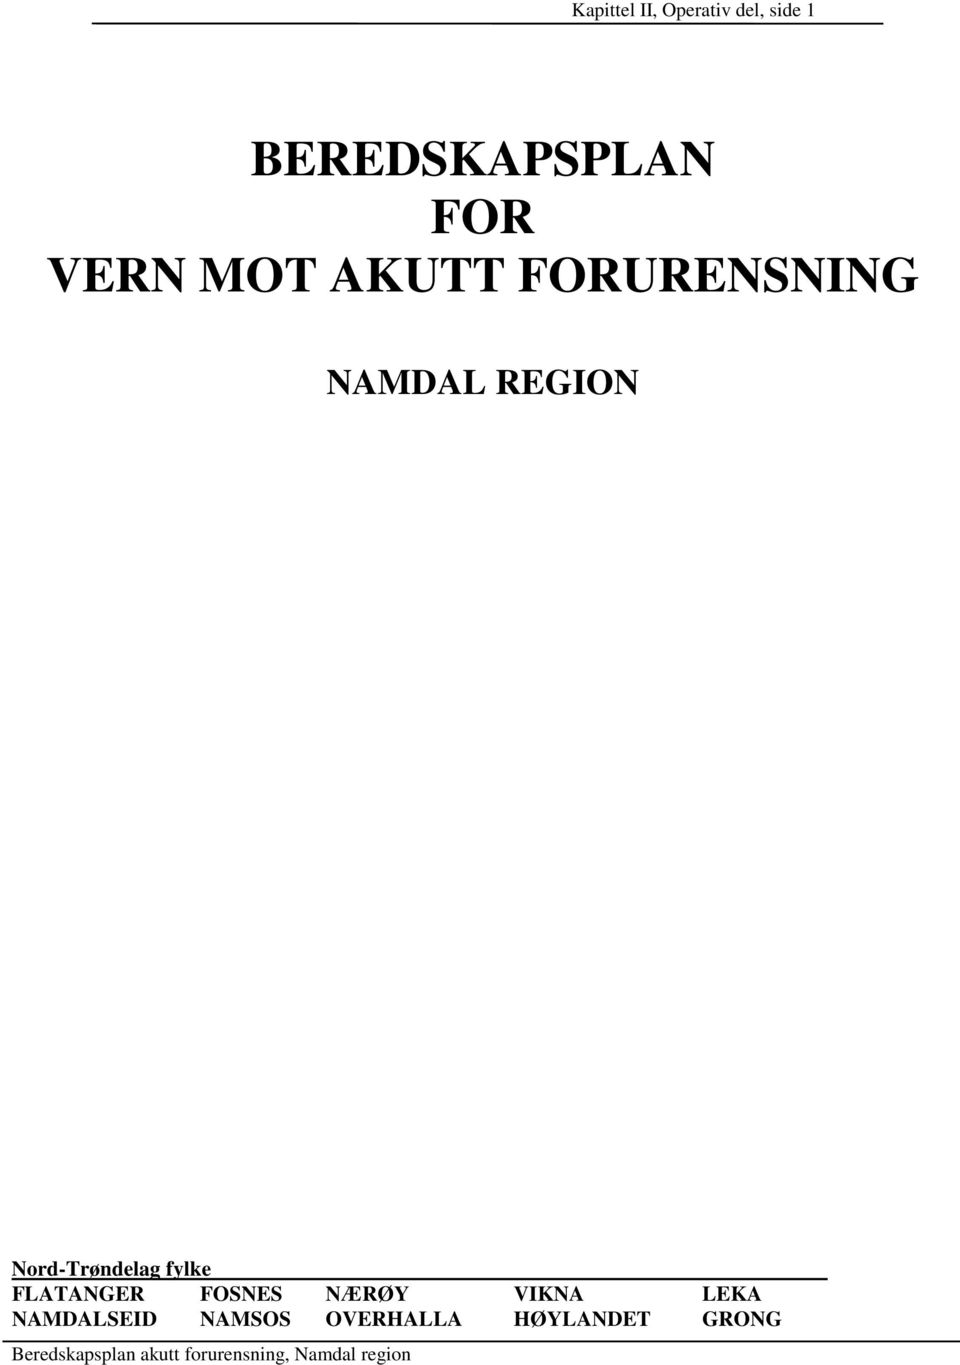 Nord-Trøndelag fylke FLATANGER FOSNES NÆRØY